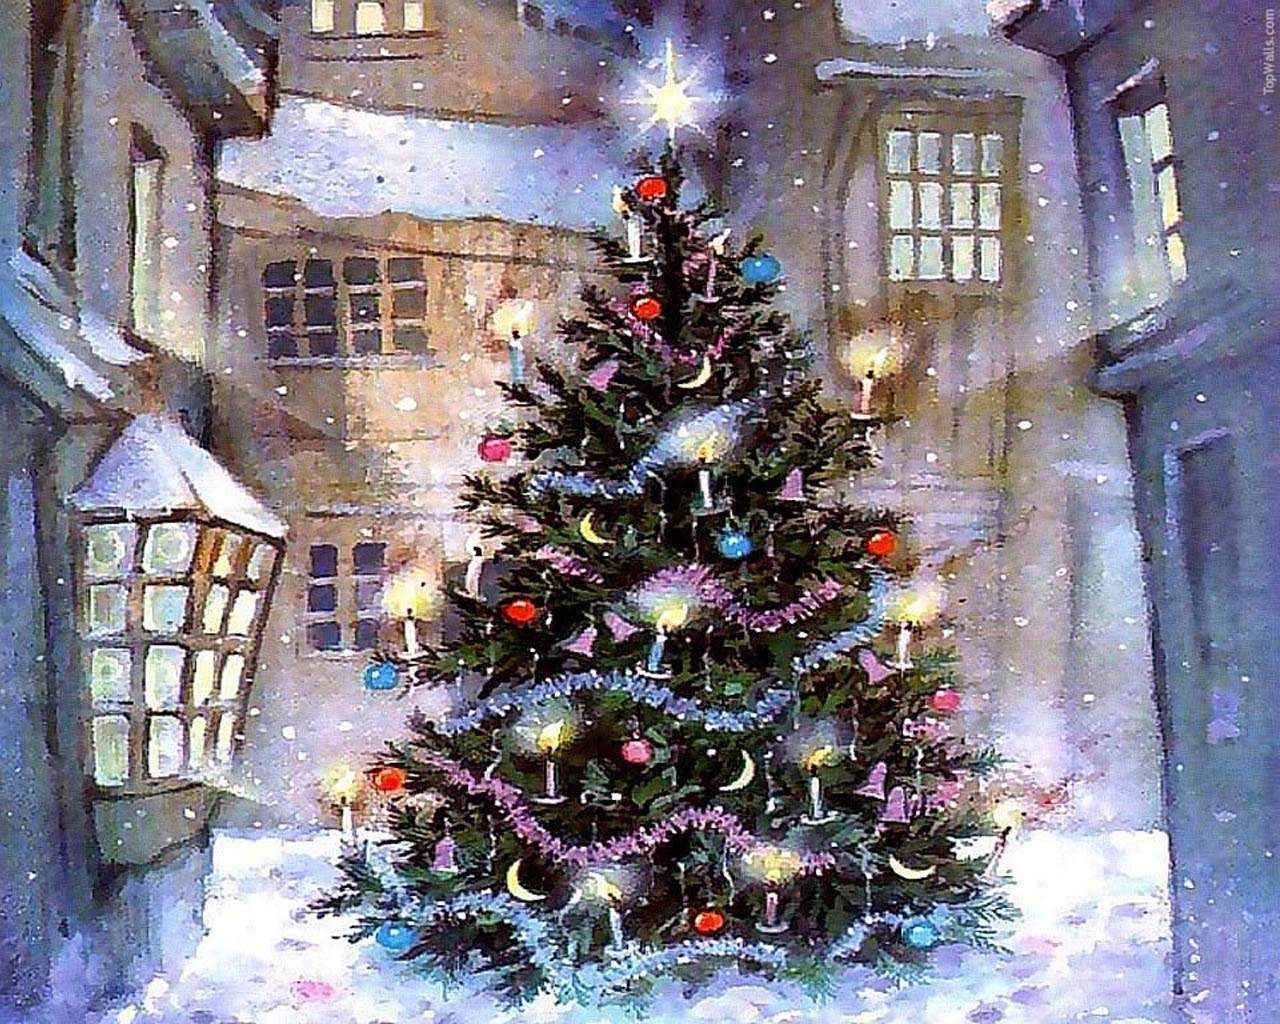 Christmas Wallpaper For Desktop. Christmas art, Animated christmas tree, Animated christmas